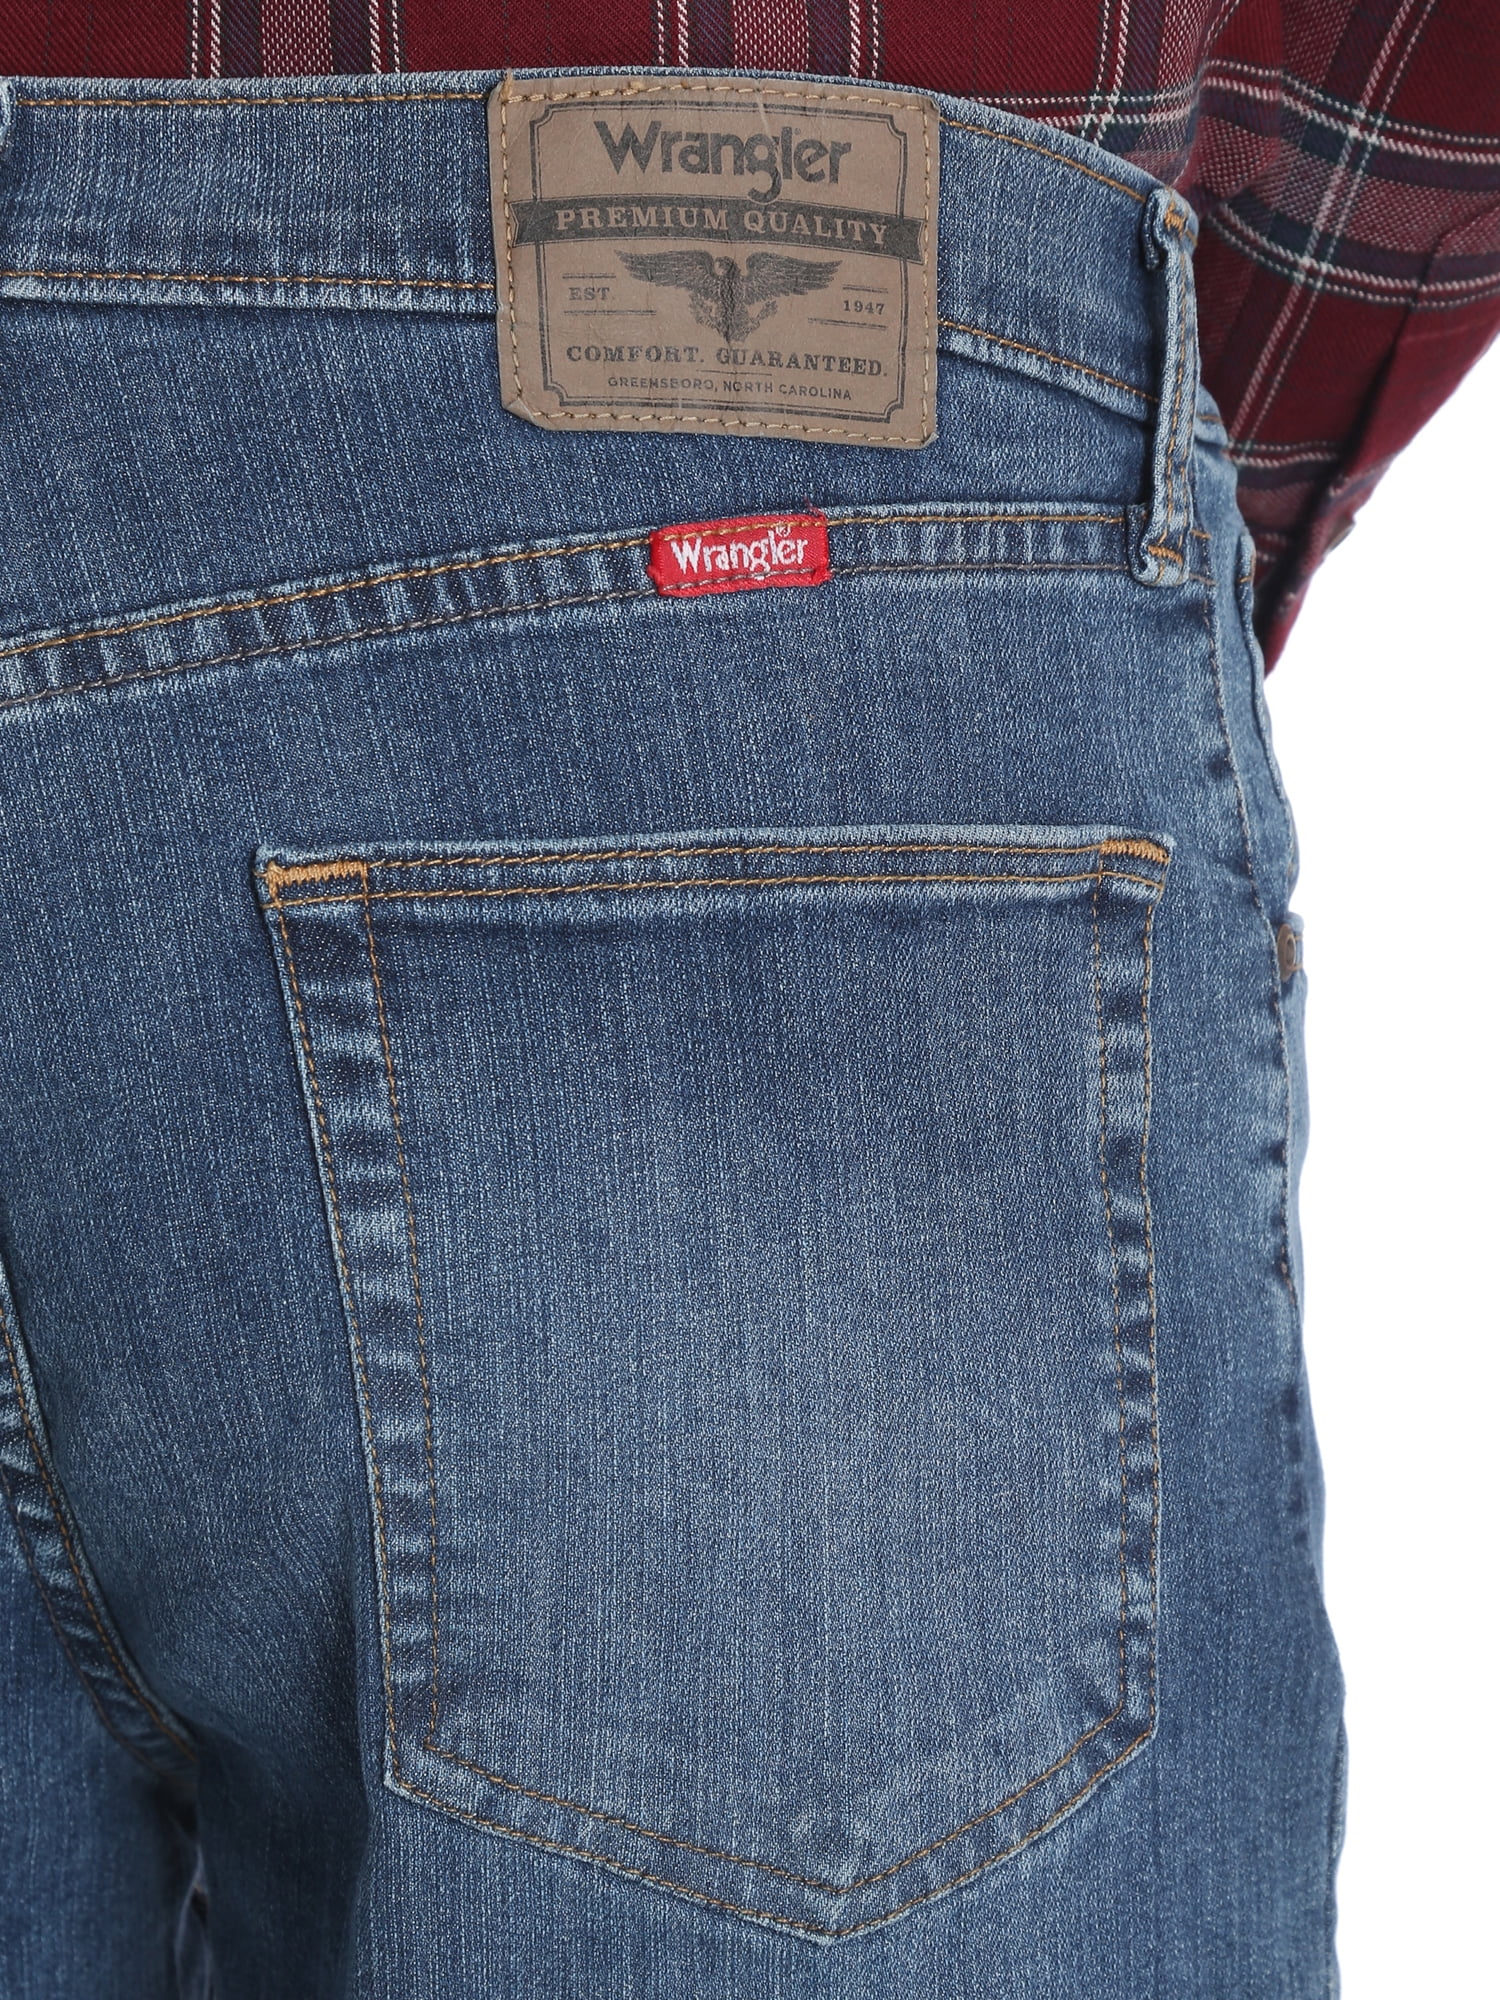 Arriba 65+ imagen wrangler flex jeans walmart - Thptnganamst.edu.vn